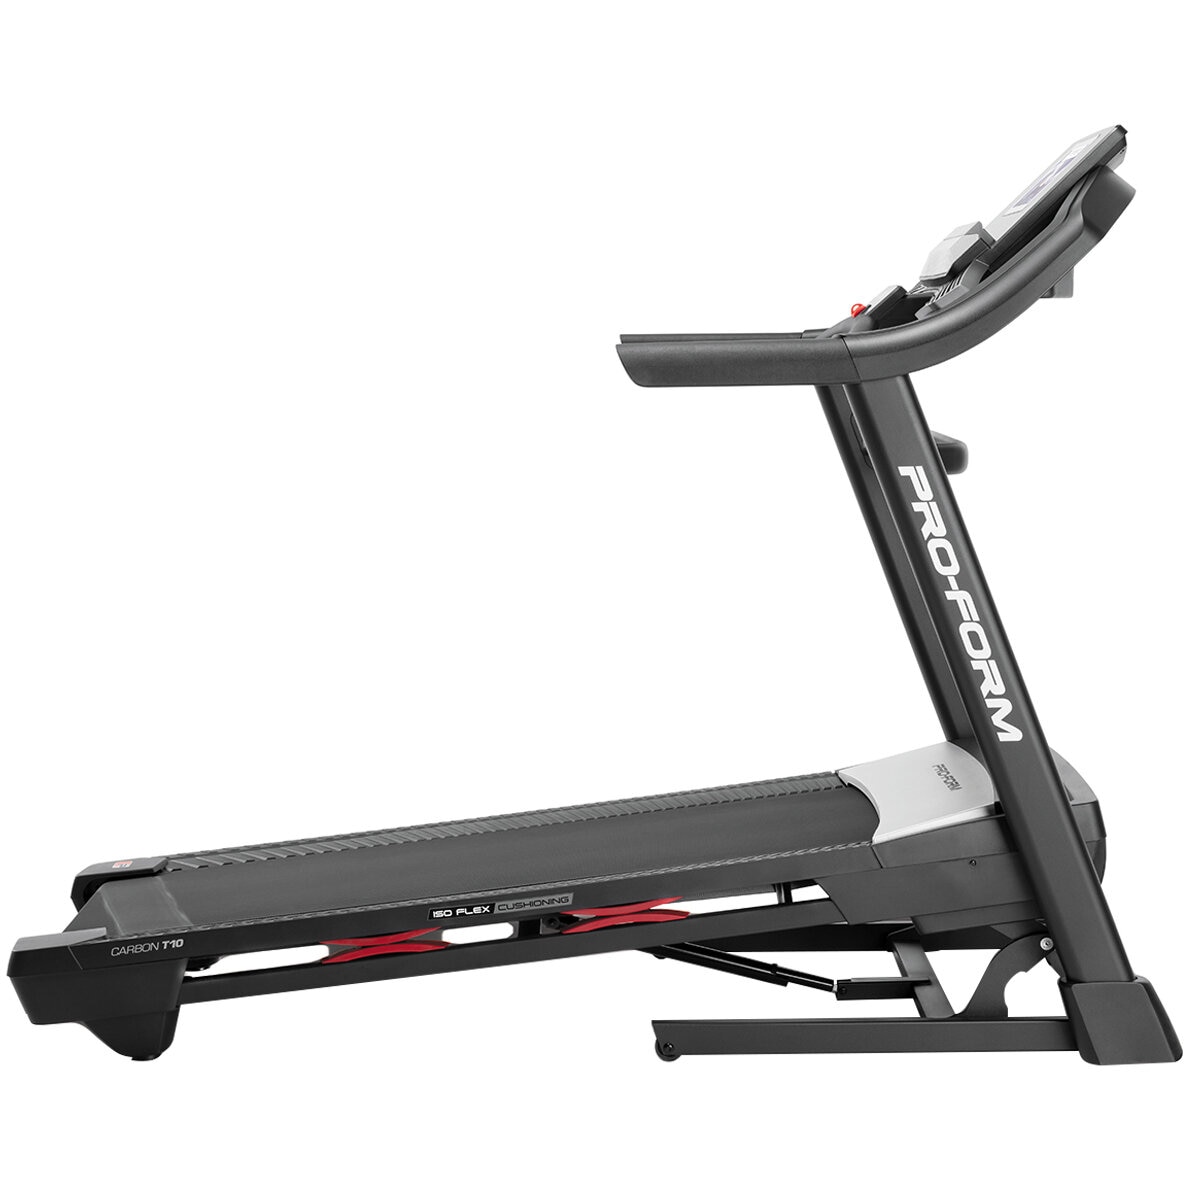 Proform Carbon T10 Treadmill